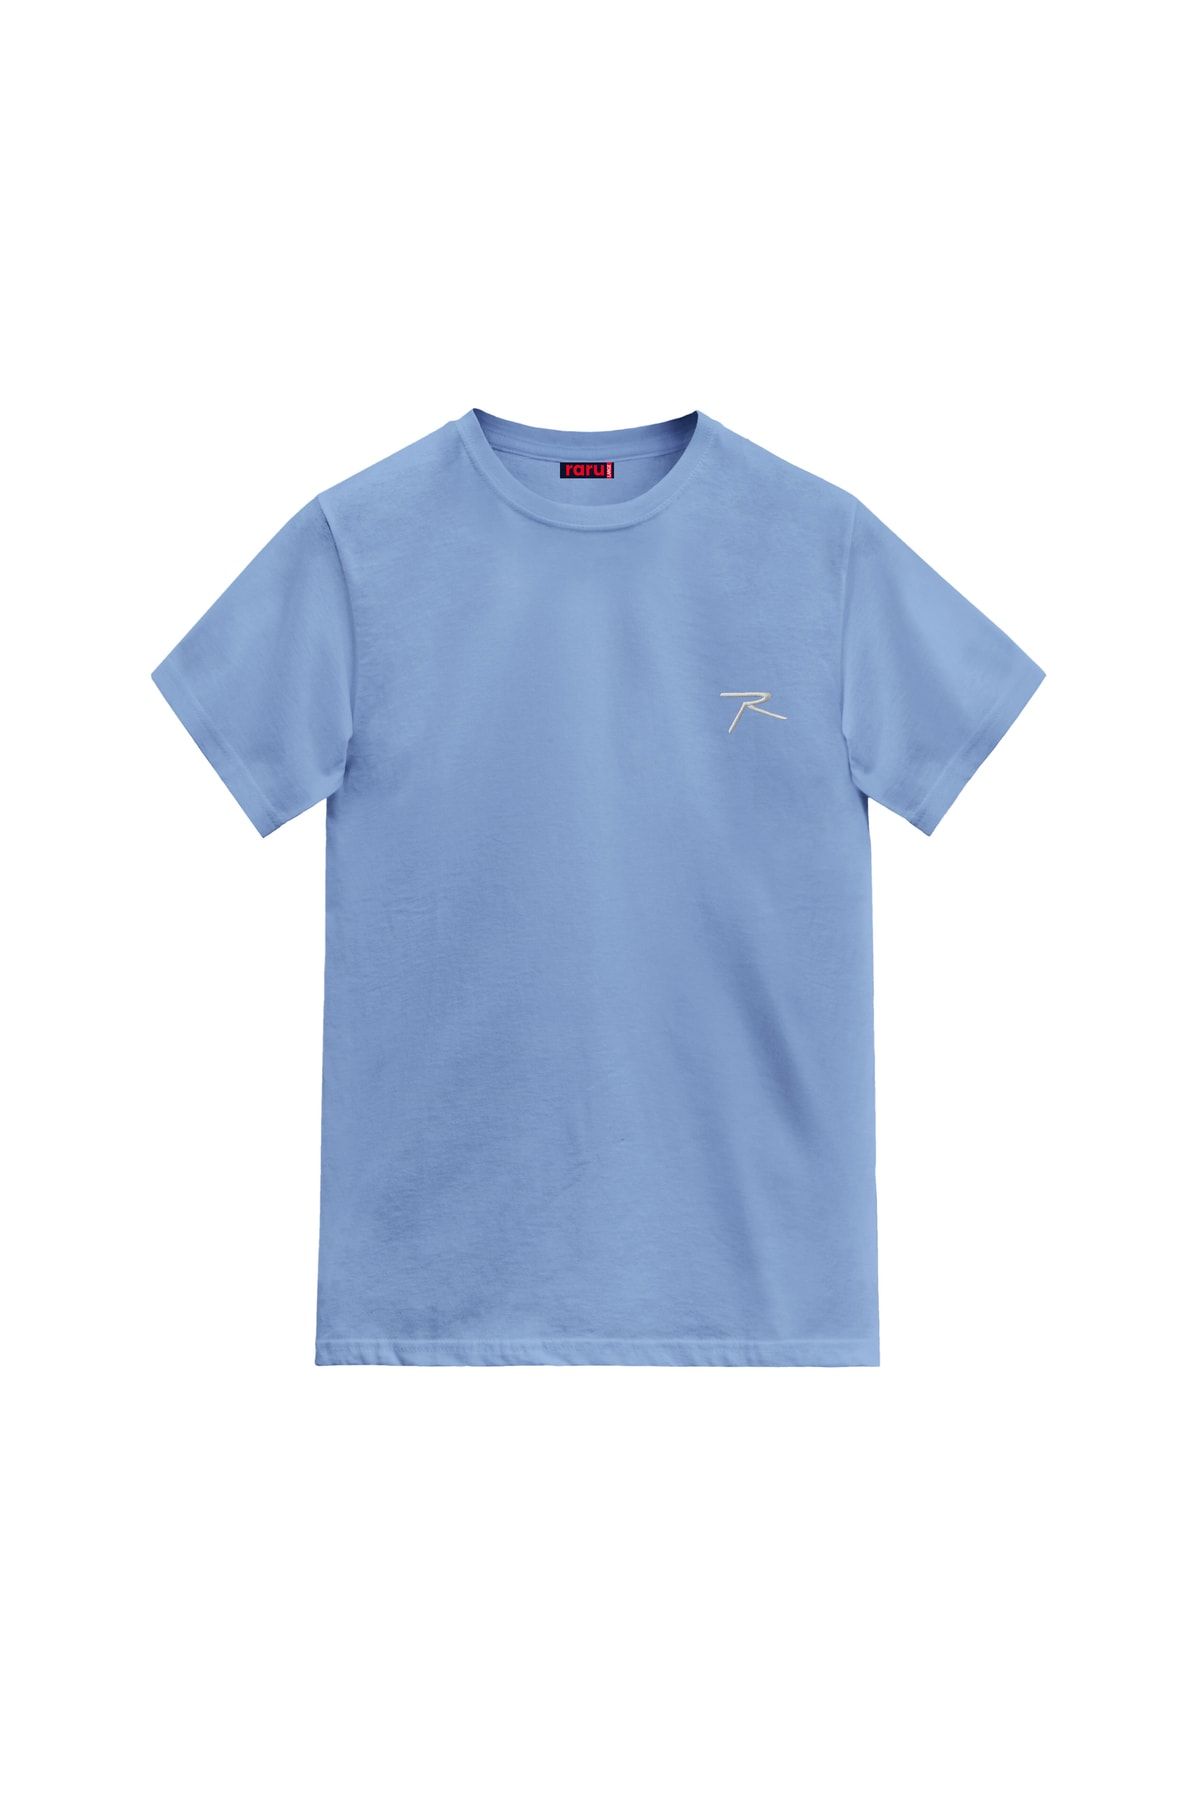 raru Erkek %100 Pamuk T-shirt Agnıtıo Mavi